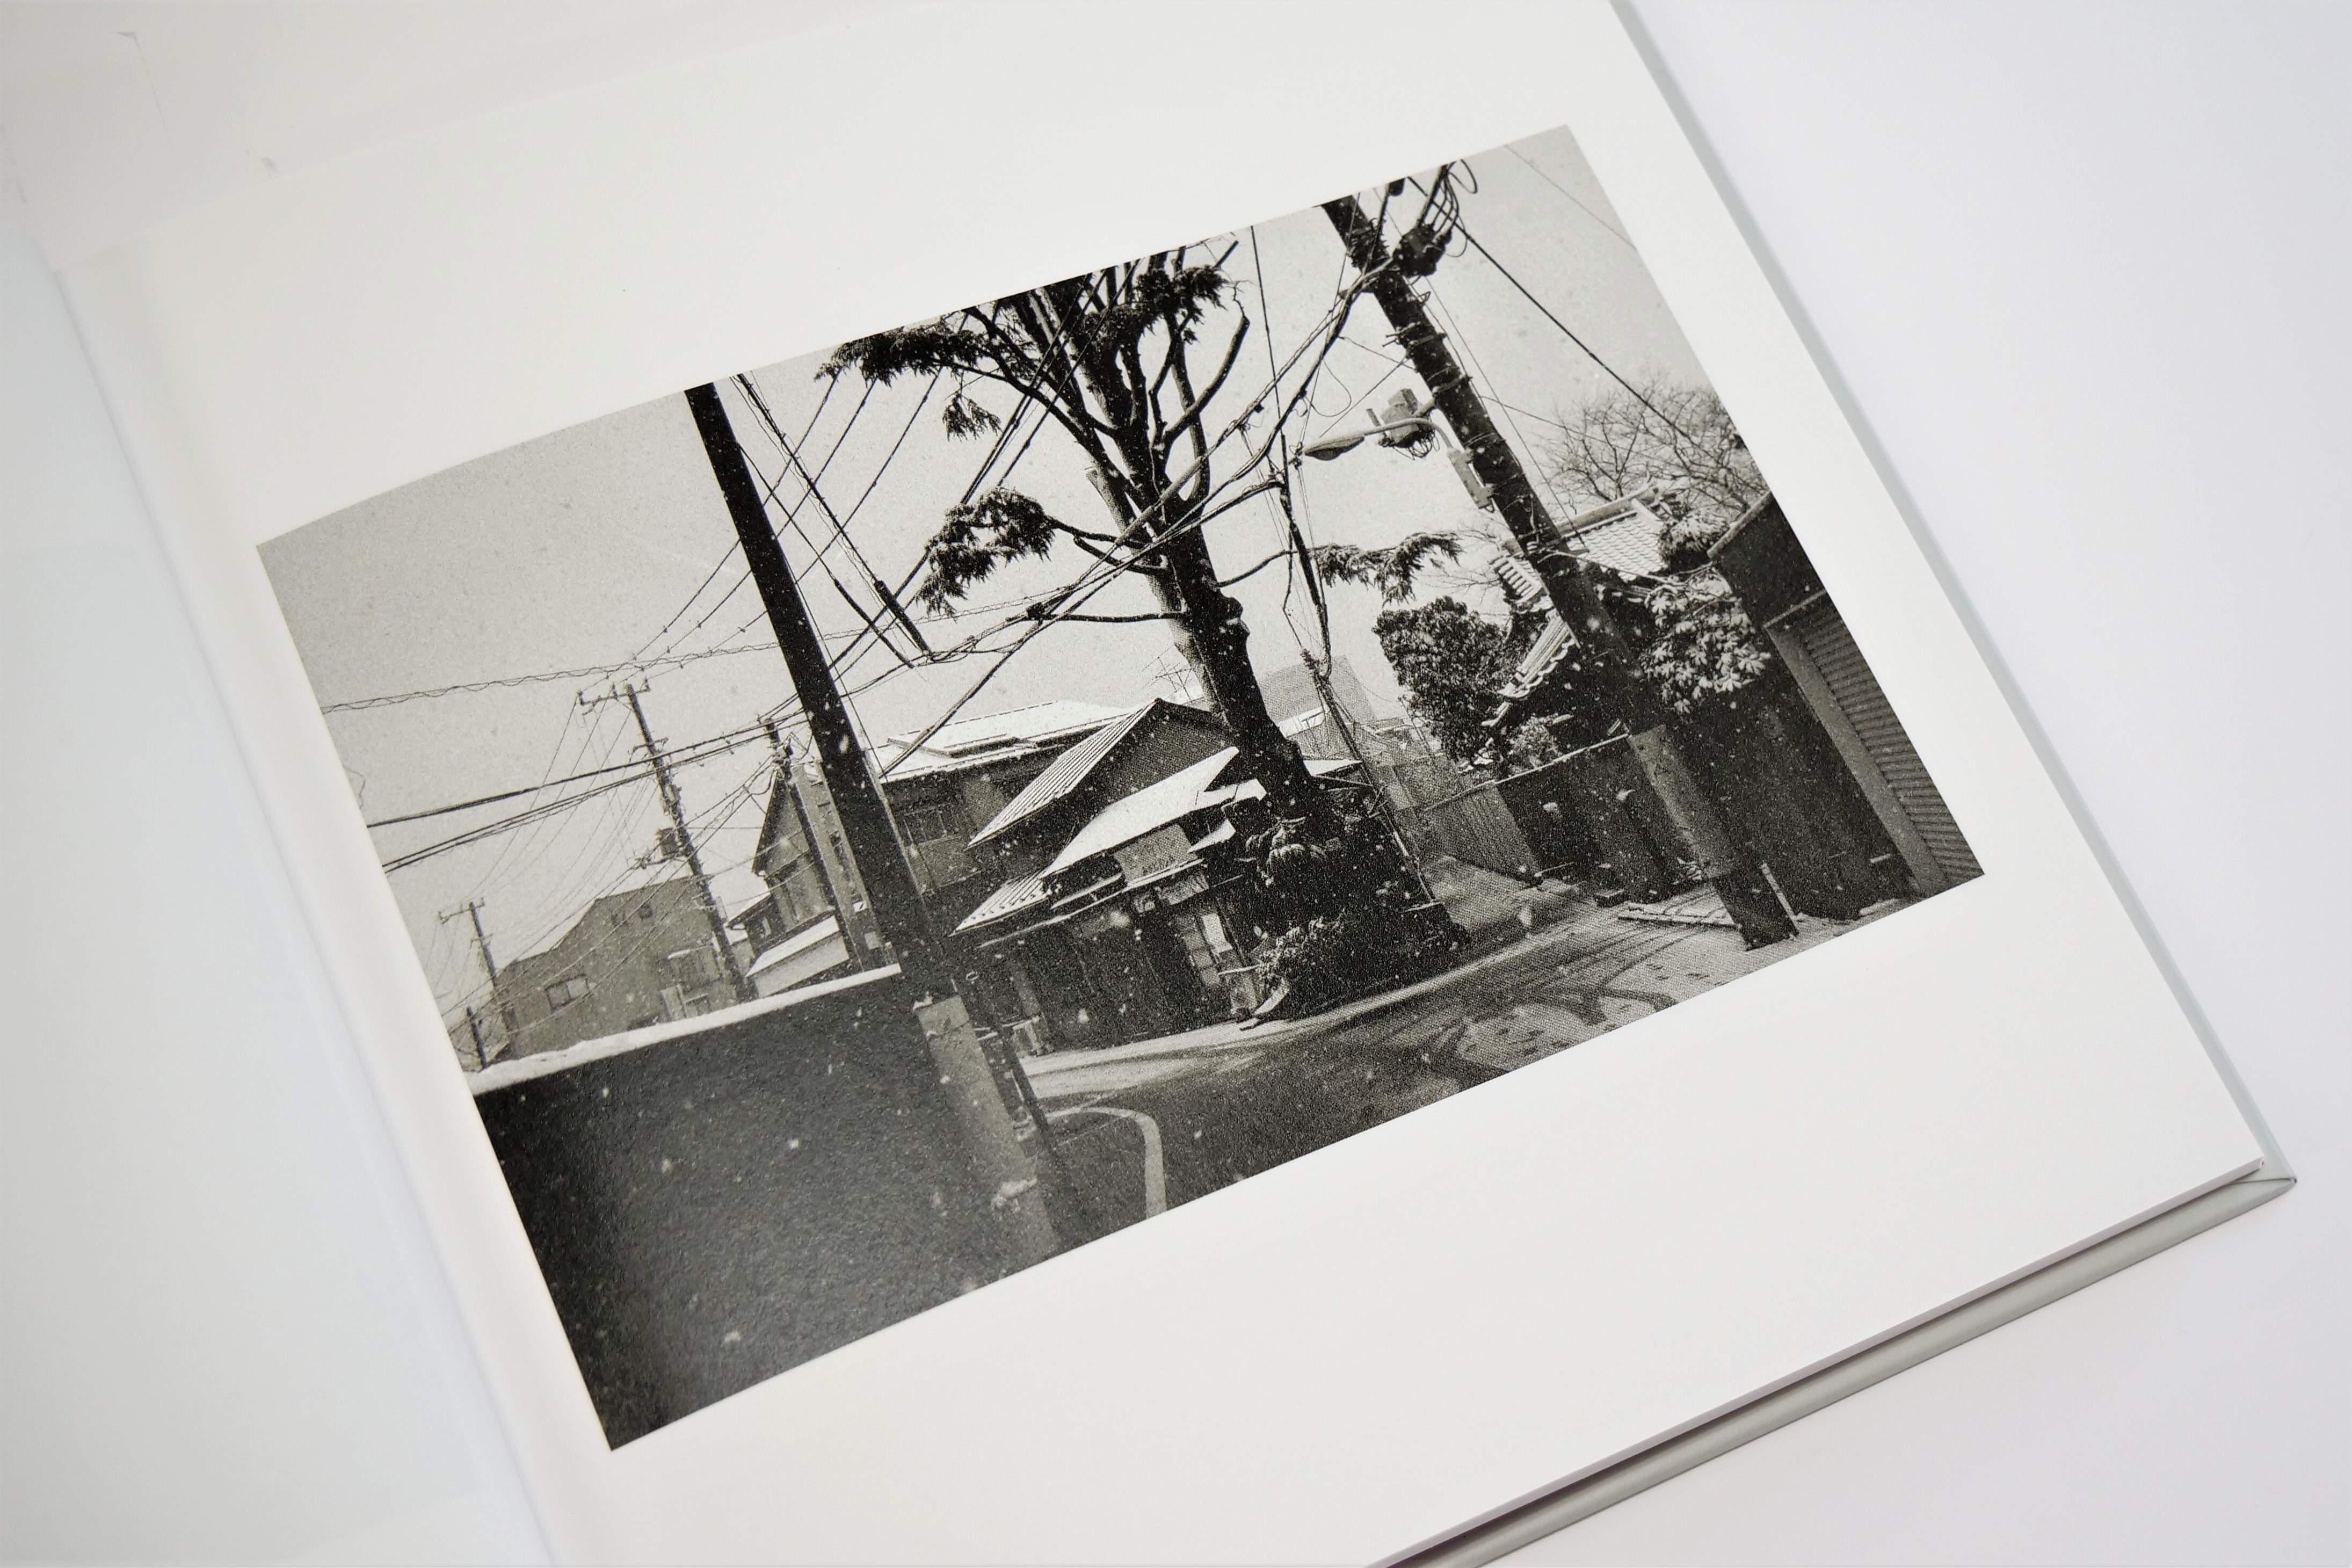 東京下町を外国人写真家のフィルターを通して追体験する写真集。ウォームトーンのグレーで暖かみのある印象に - 東京印書館 | 写真集・展覧会図録・絵本・その他印刷物の企画制作|  TOKYO INSHOKAN PRINTING CO.